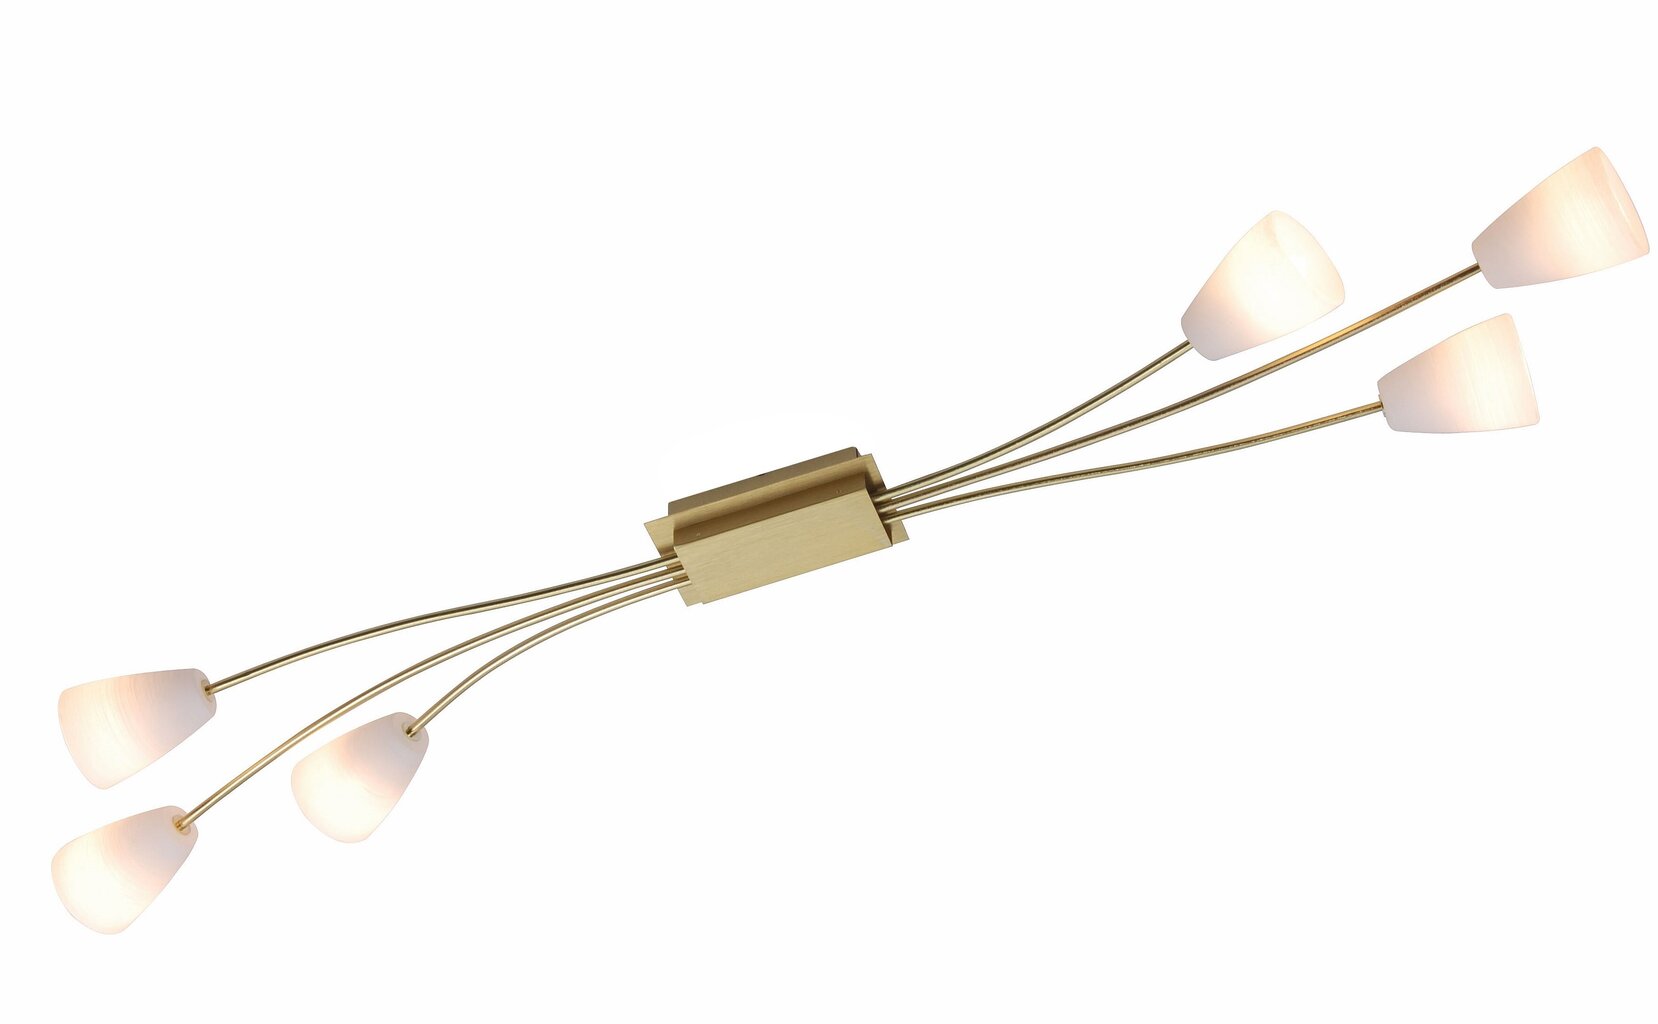 Lubinis šviestuvas G.LUX CIVIC-6 matinio aukso kaina ir informacija | Lubiniai šviestuvai | pigu.lt